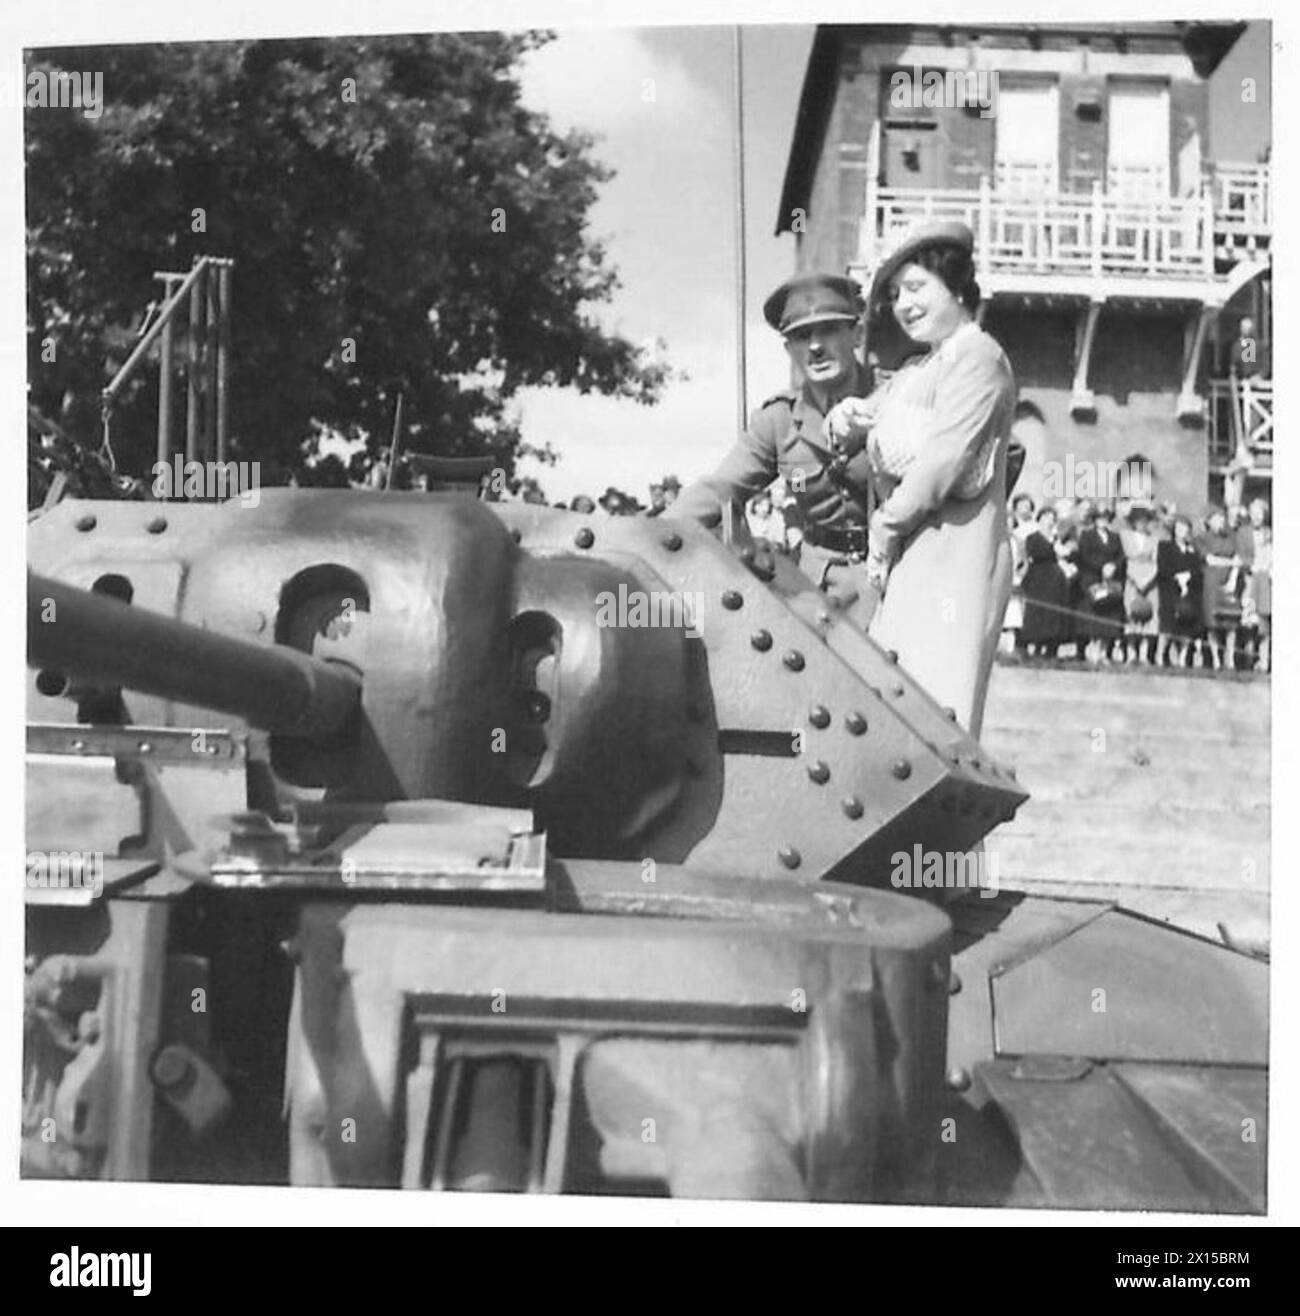 DIE KÖNIGIN INSPIZIERT die BUCHTEN DER KÖNIGIN - die Königin und der Lieut-Colonel inspizieren den britischen Panzer „Crusader“ Mk.VI Stockfoto